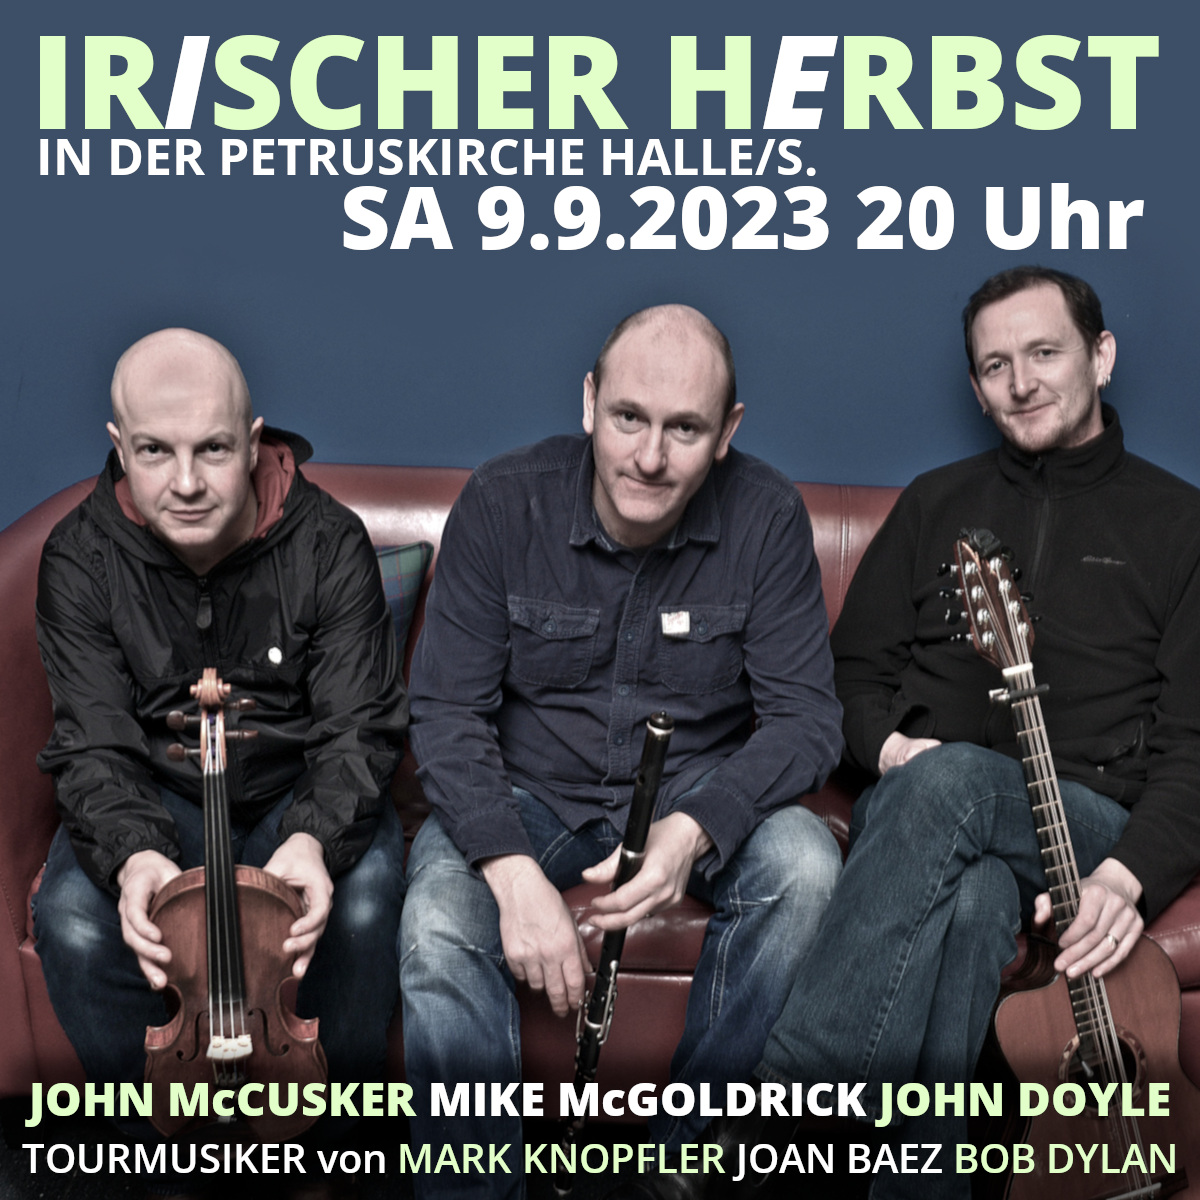 Soon, we'll host a magnificent concert here in Halle! folk-club-halle.de #irishfolk #scottishfolk